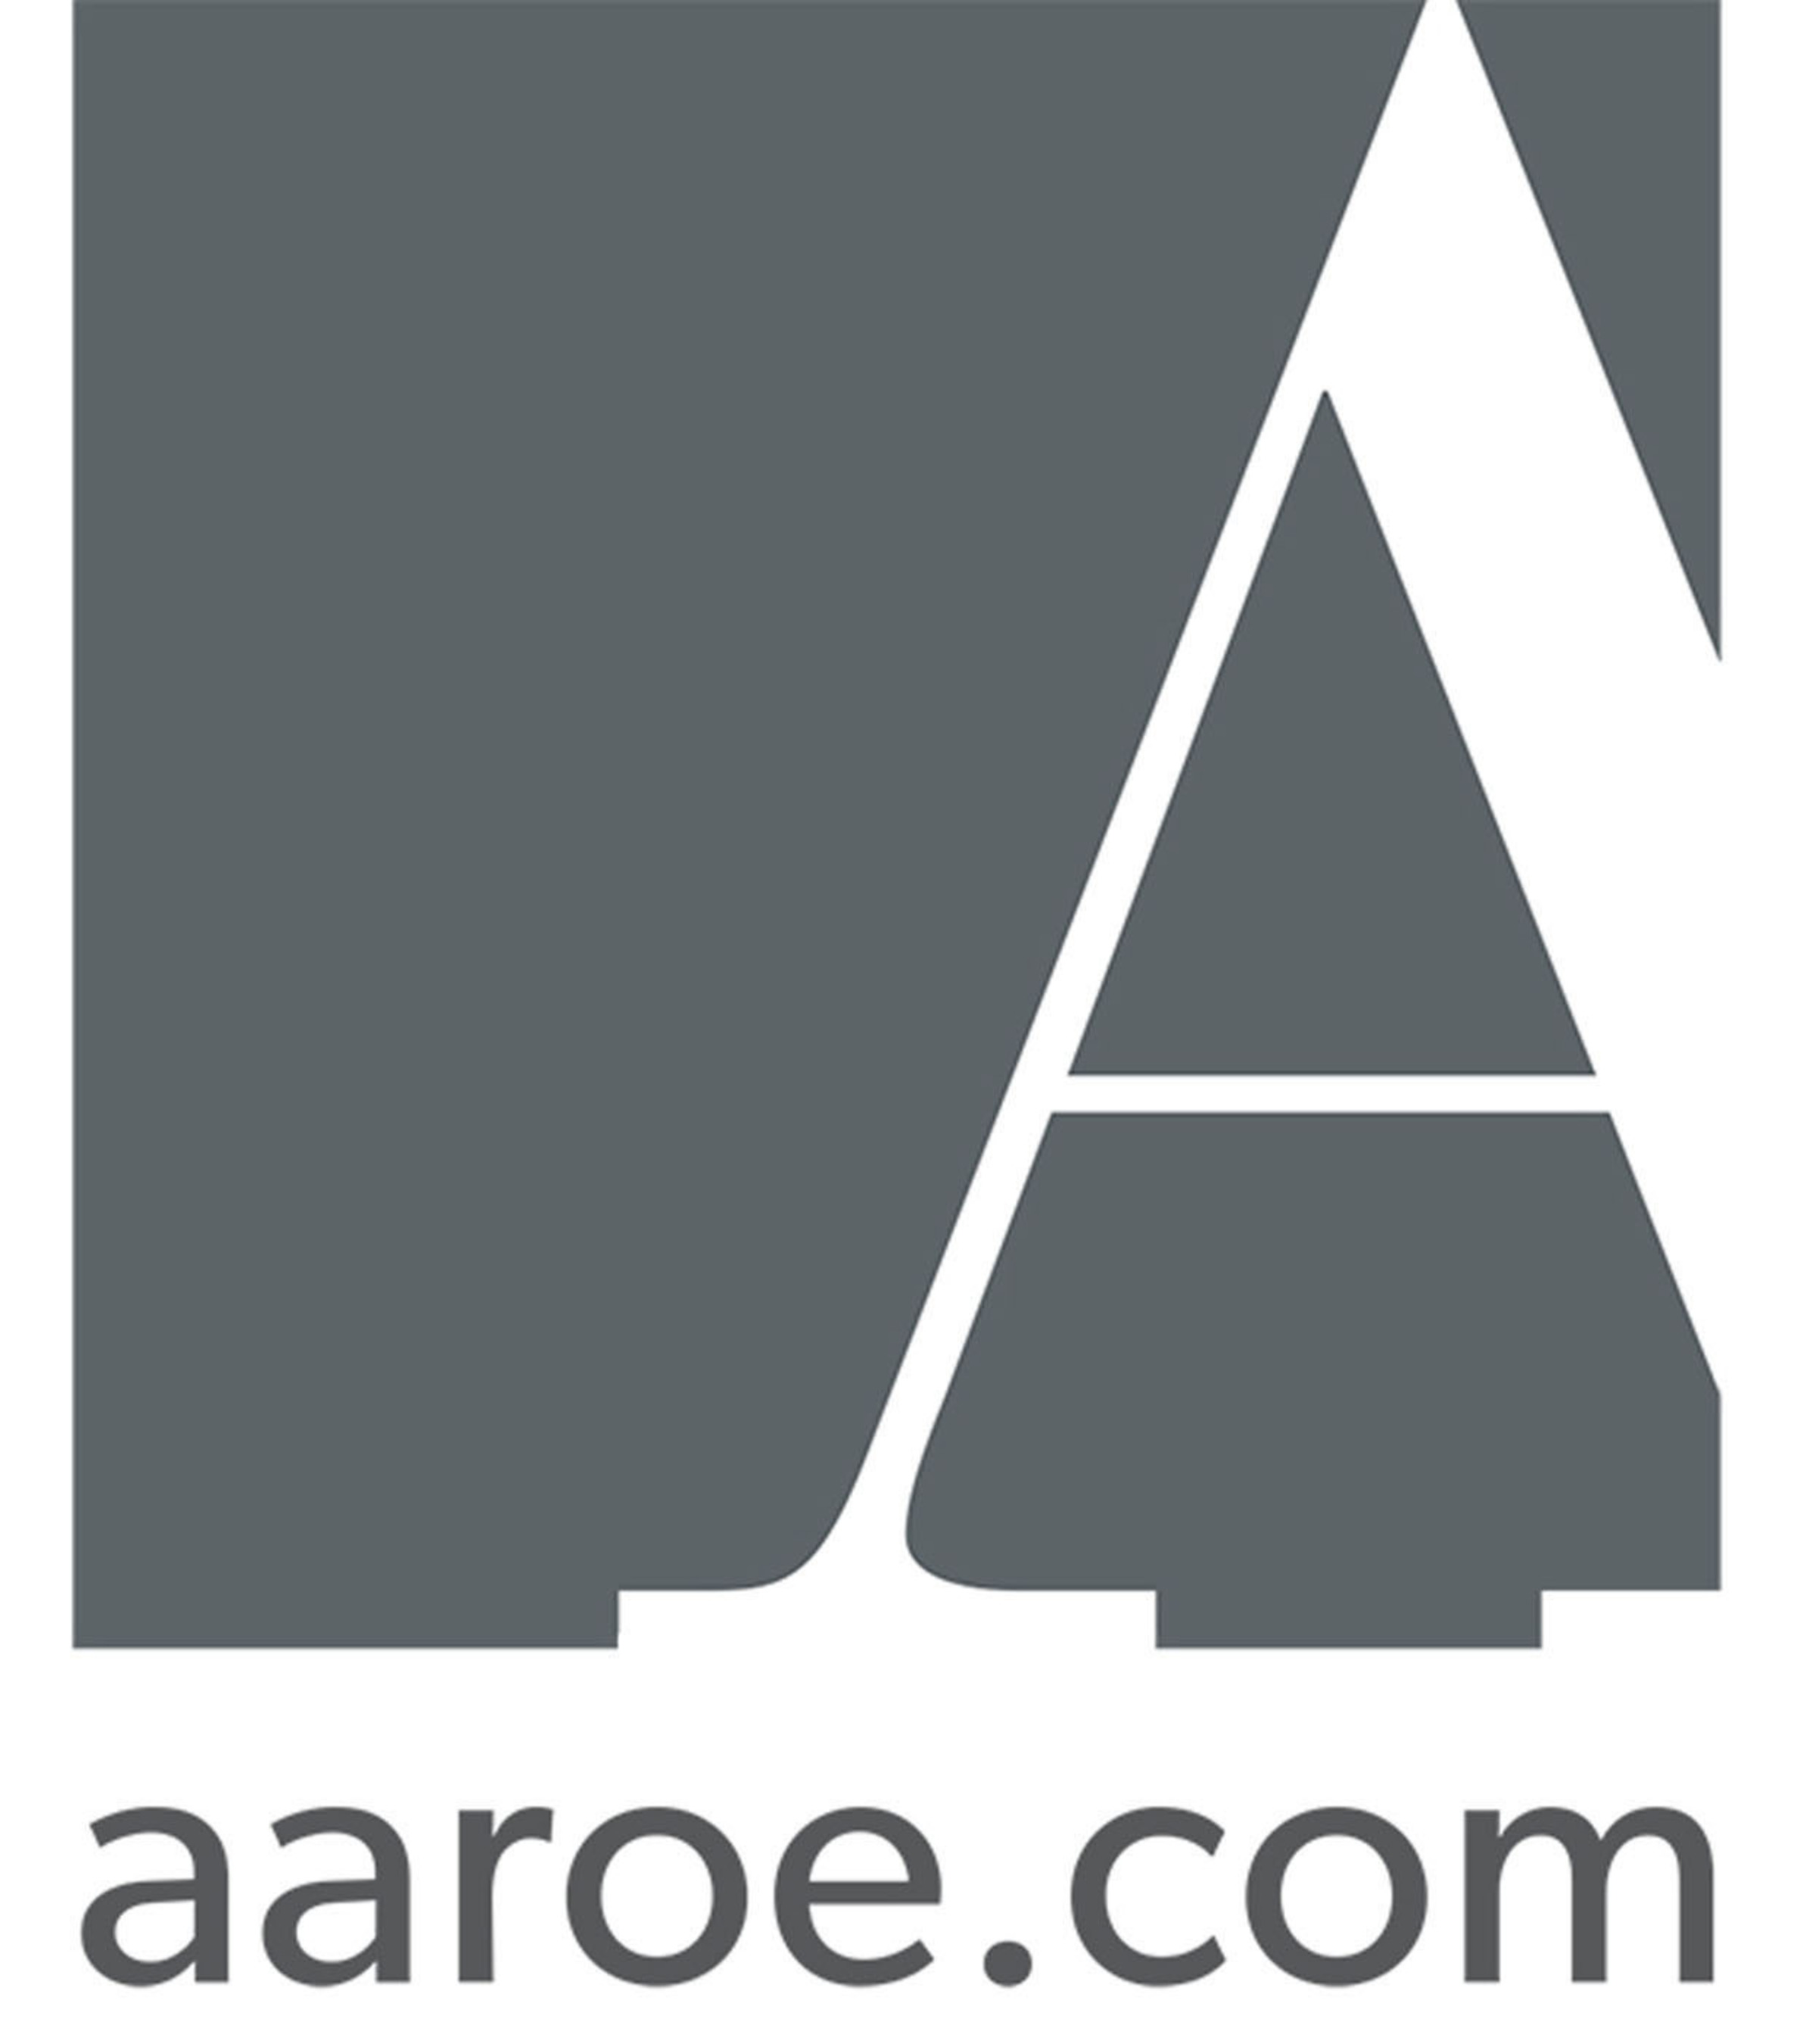 John Aaroe Group logo.